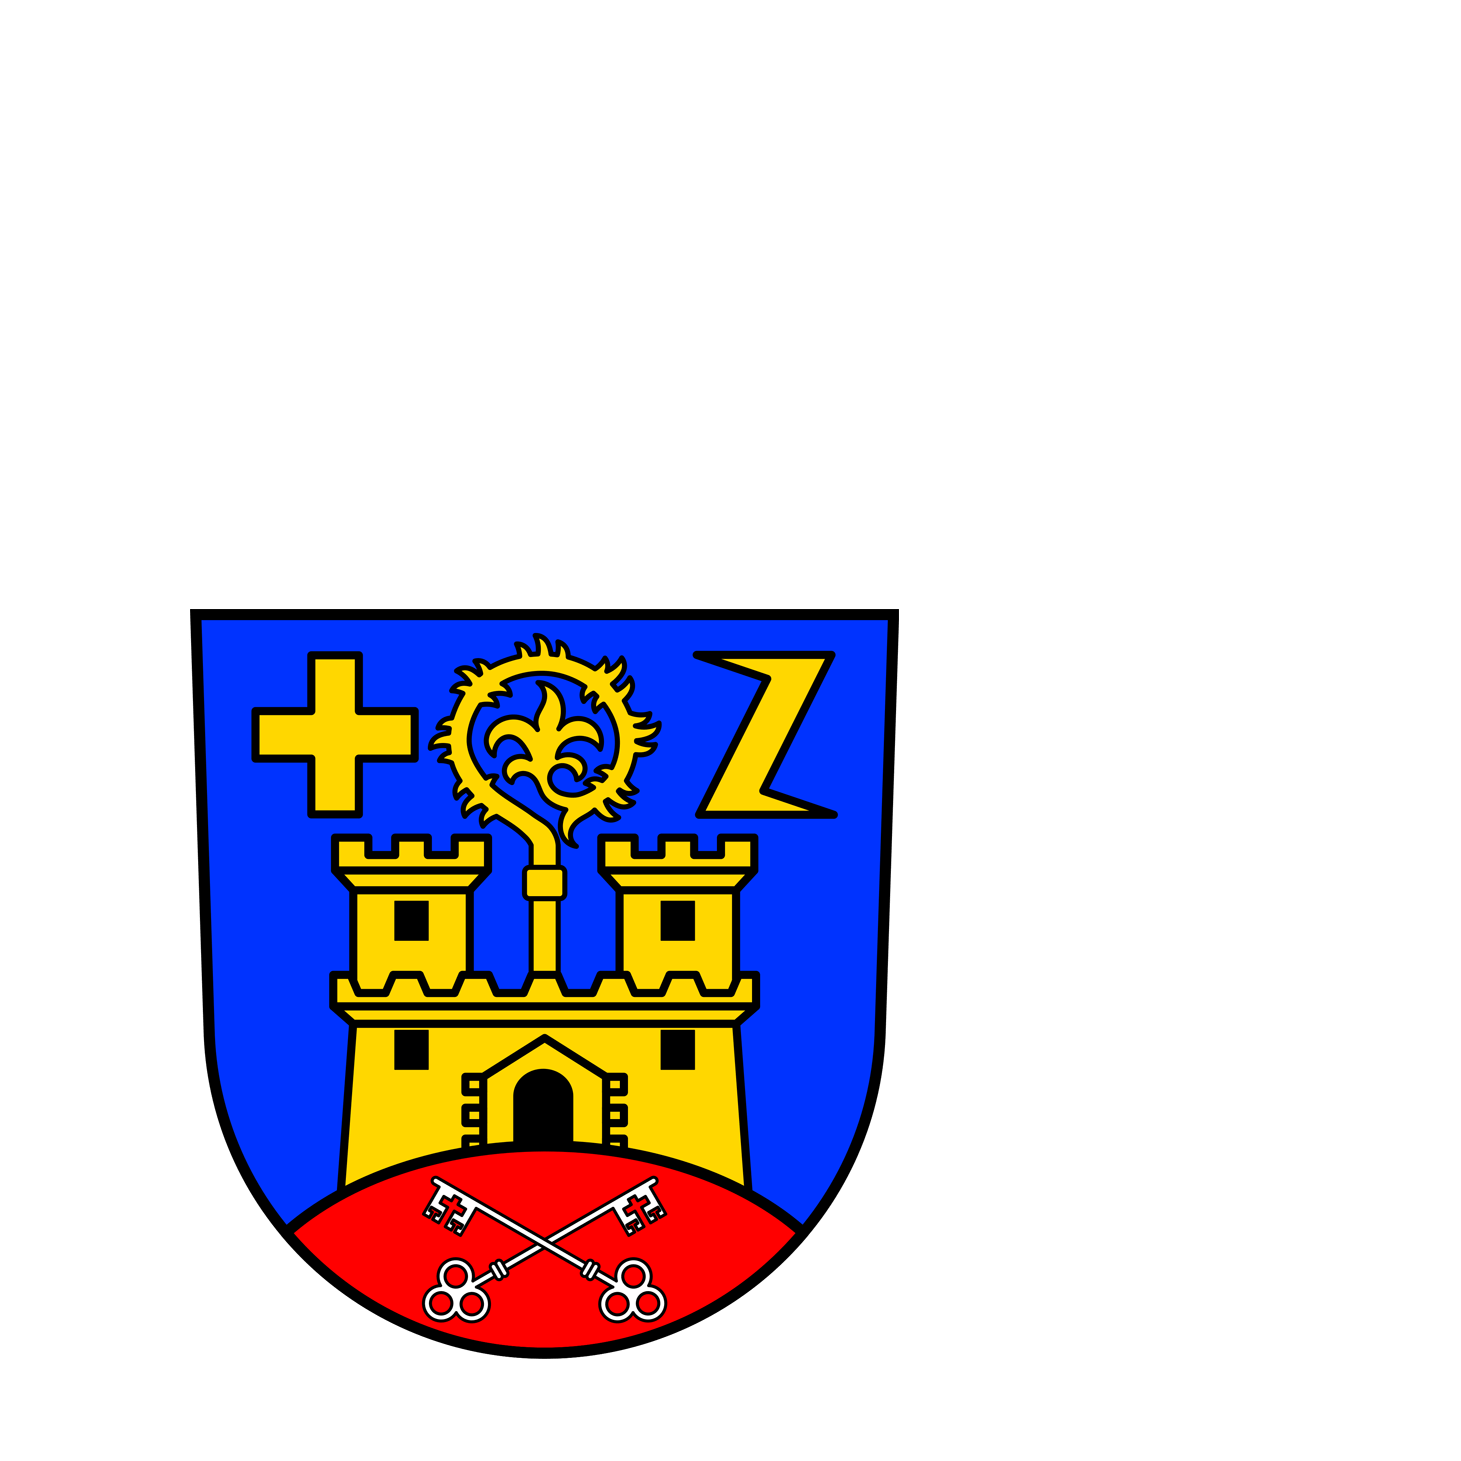 Wappen der Gemeinde Tholey - © Gemeinde Tholey